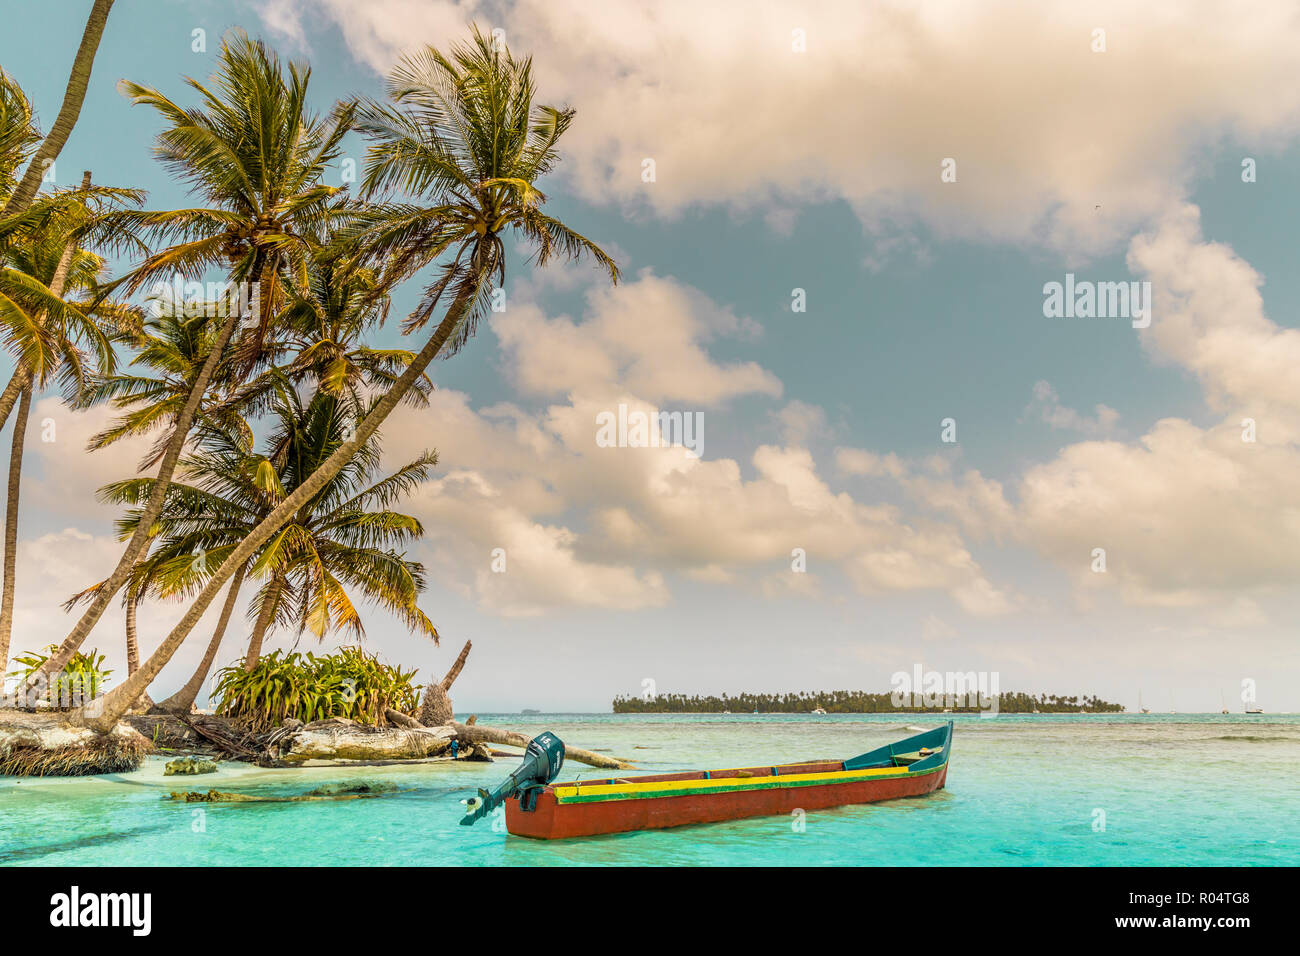 Un bateau coloré sur la magnifique île Pelicano dans les îles San Blas, Kuna Yala, Panama, Amérique Centrale Banque D'Images